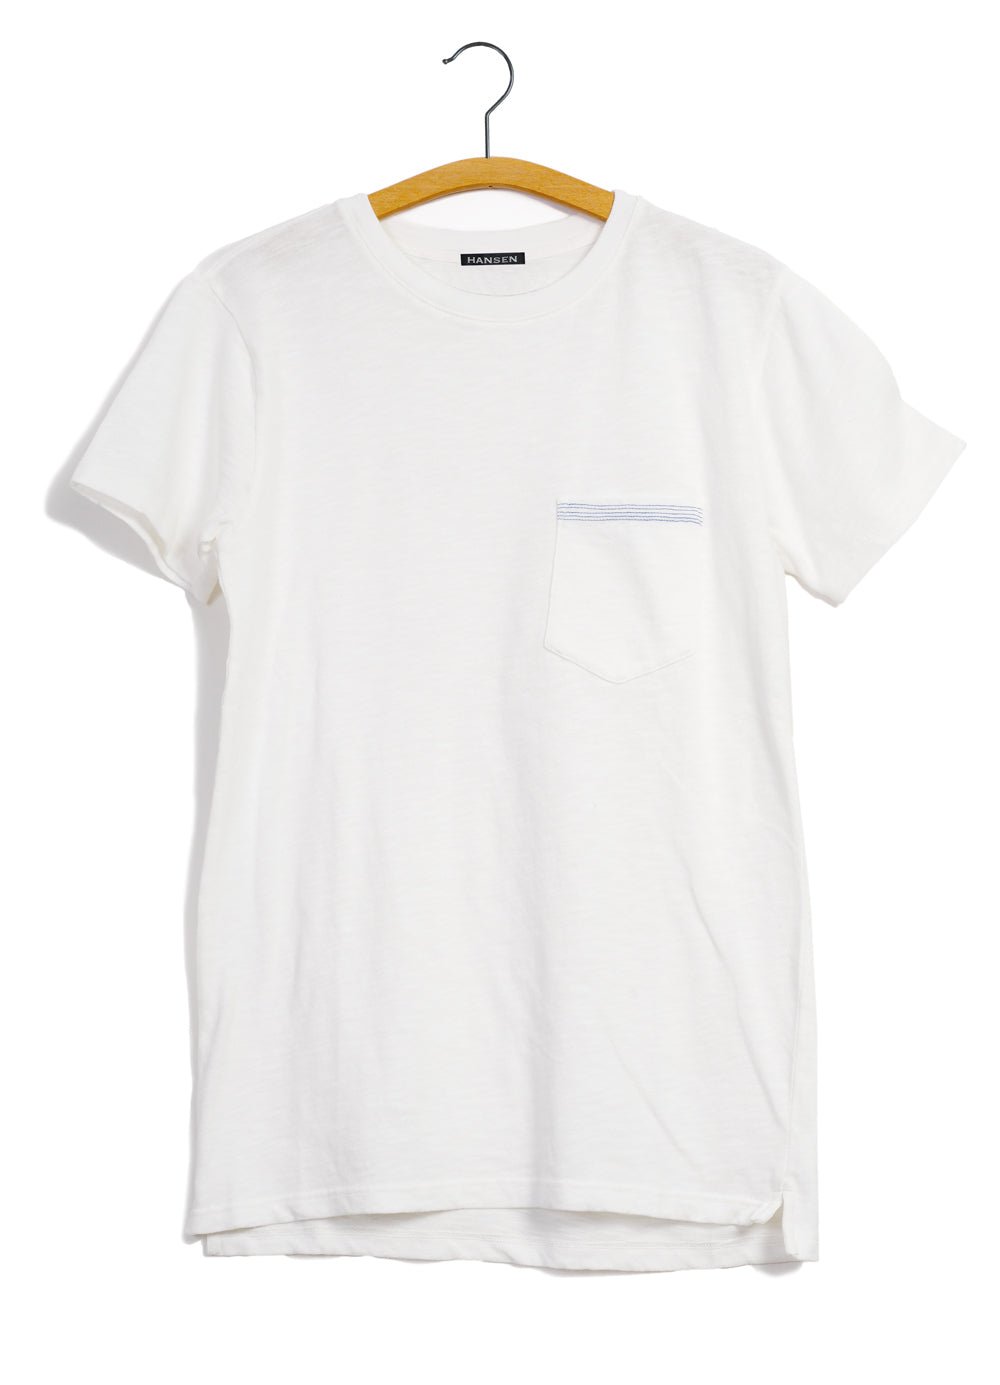 HANSEN GARMENTS - JAMES | Crew Neck Pocket T | White - HANSEN Garments